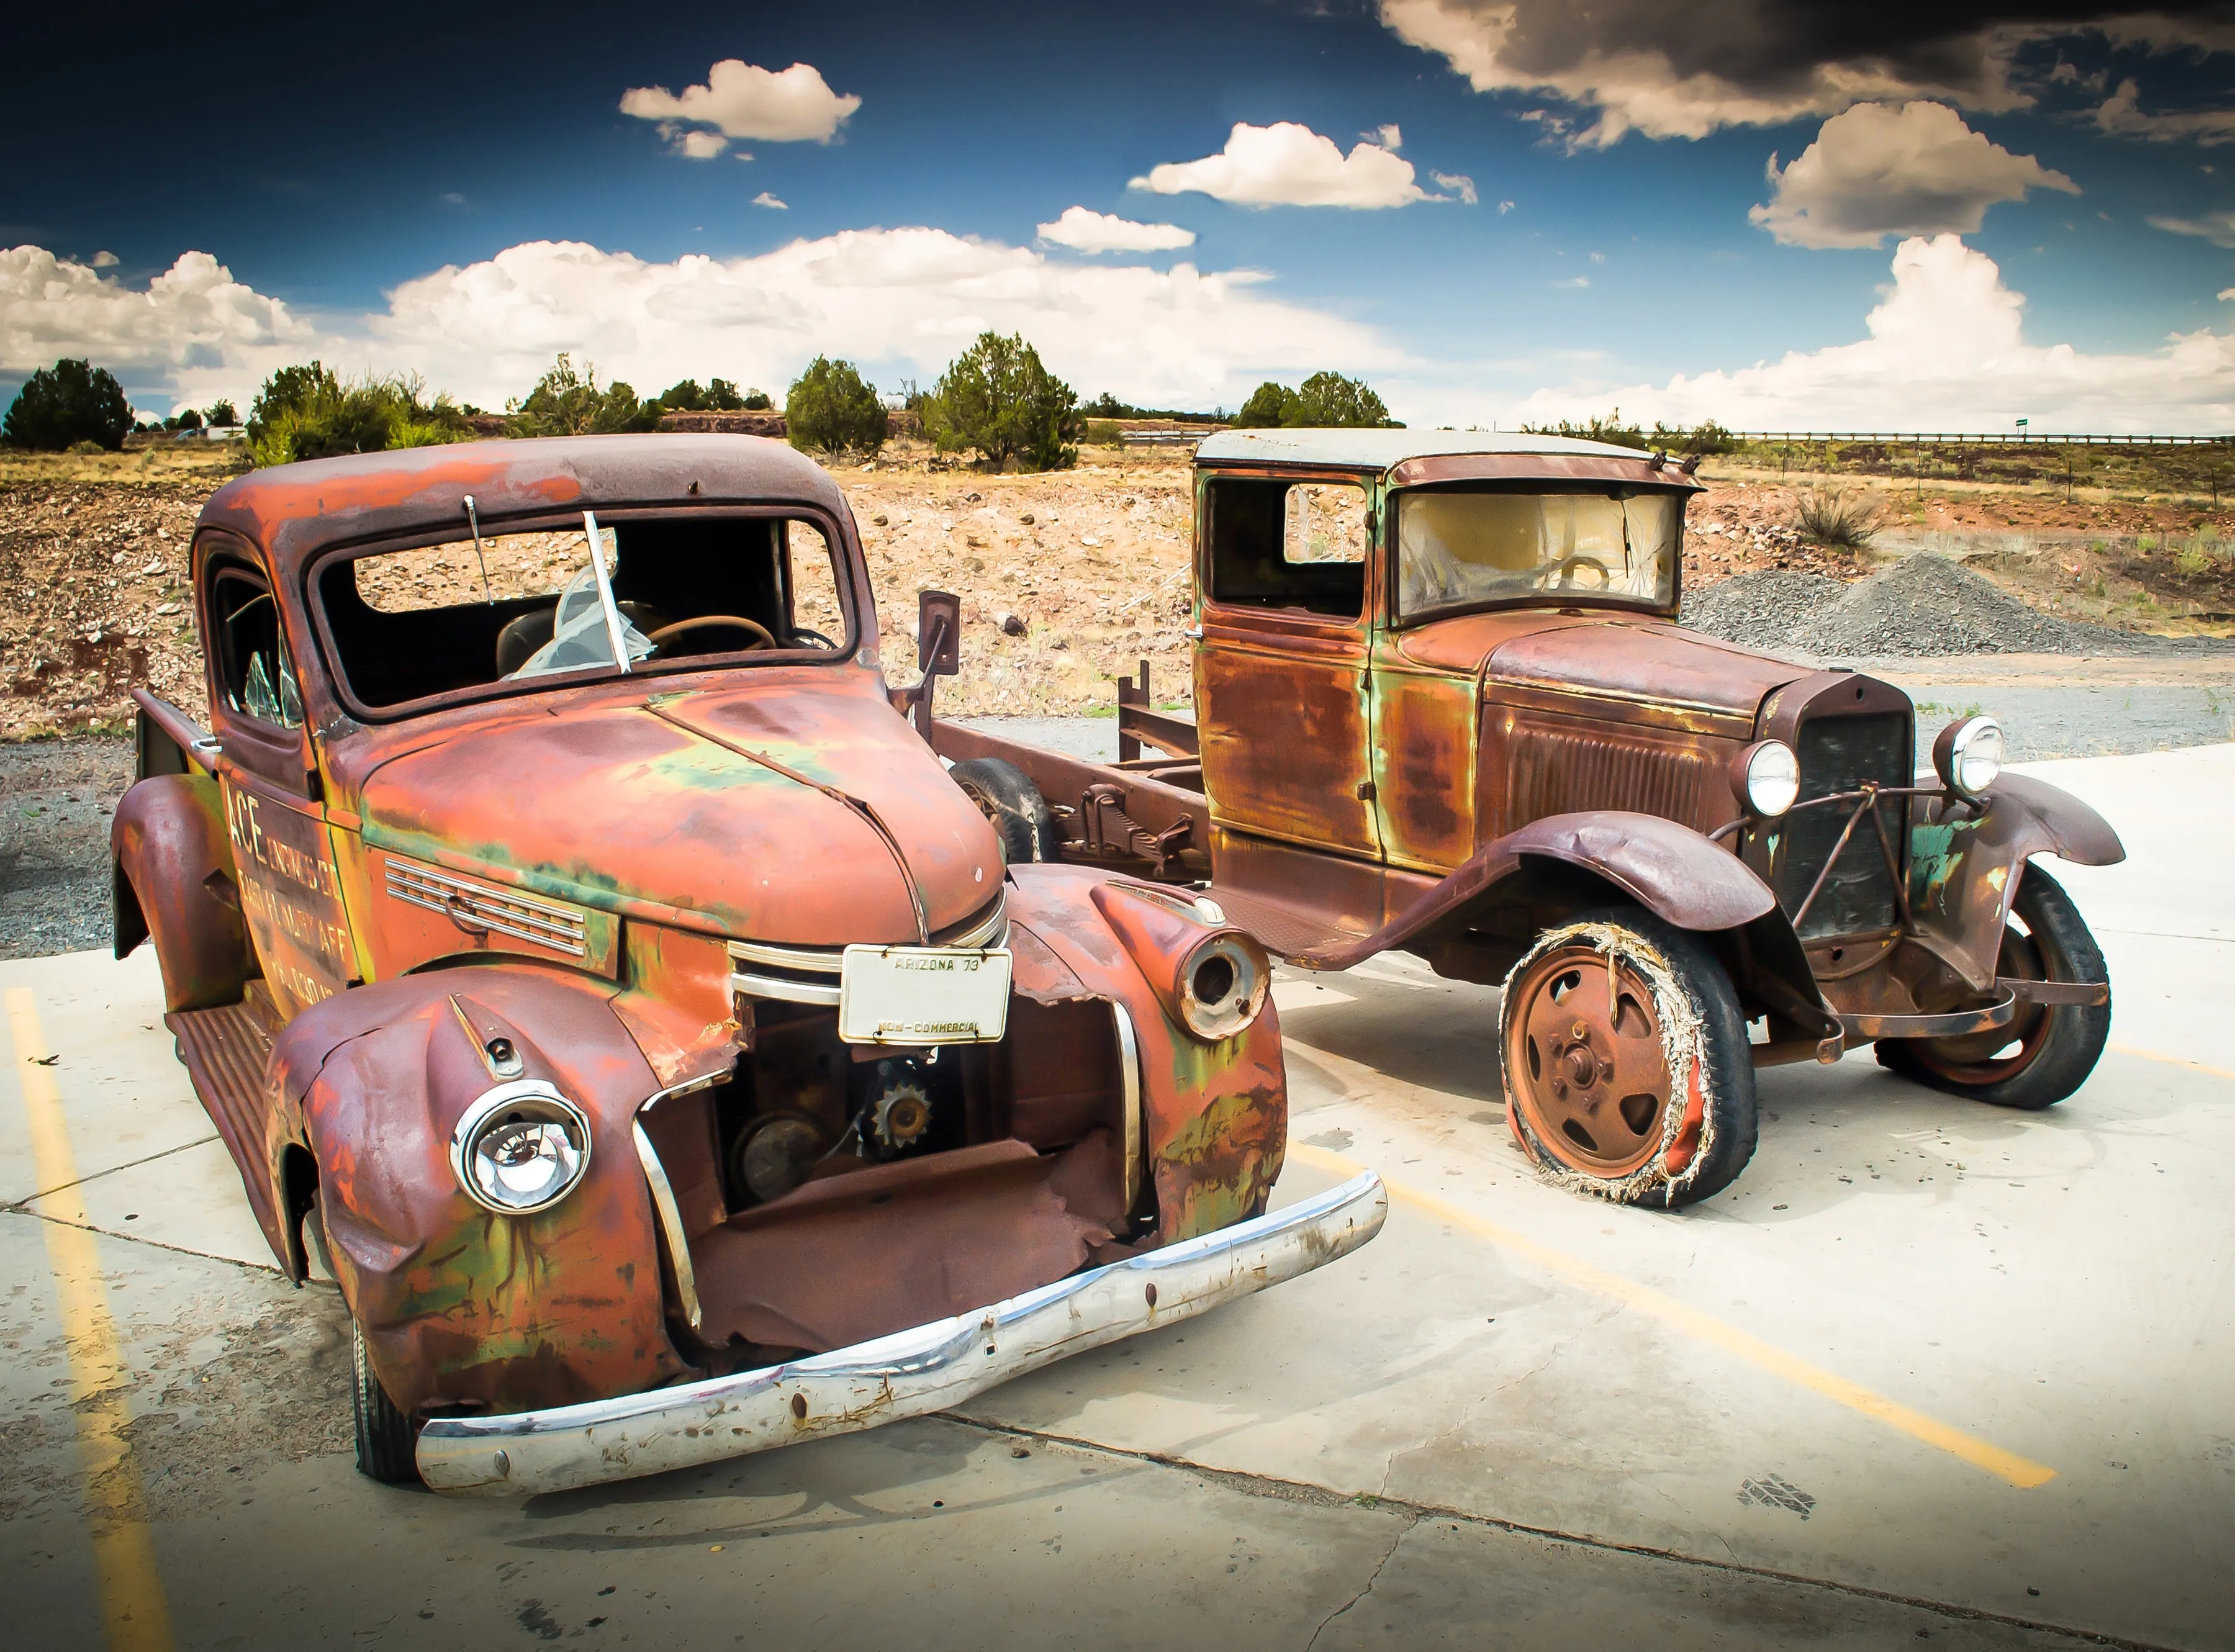 PAPERMOON Fototapete "Abandoned Old Cars" Tapeten Gr. B/L: 4 m x 2,6 m, Bahnen: 8 St., bunt (mehrfarbig) Fototapeten